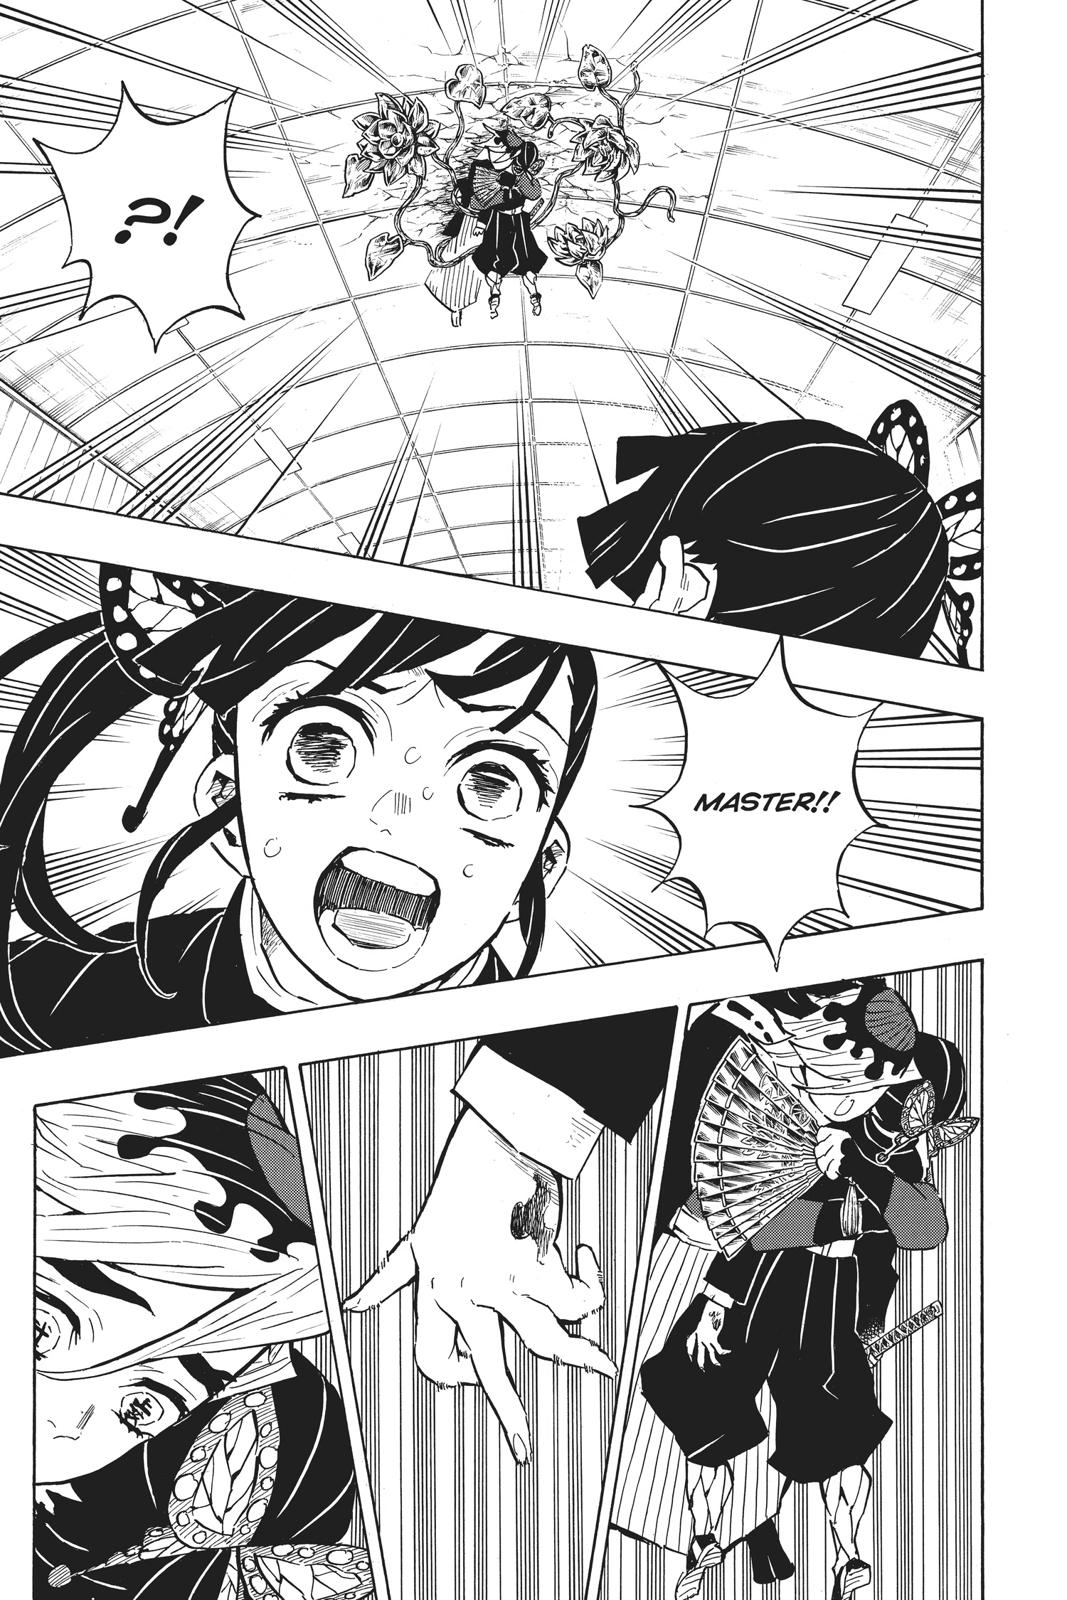 Demon Slayer Manga Manga Chapter - 143 - image 14